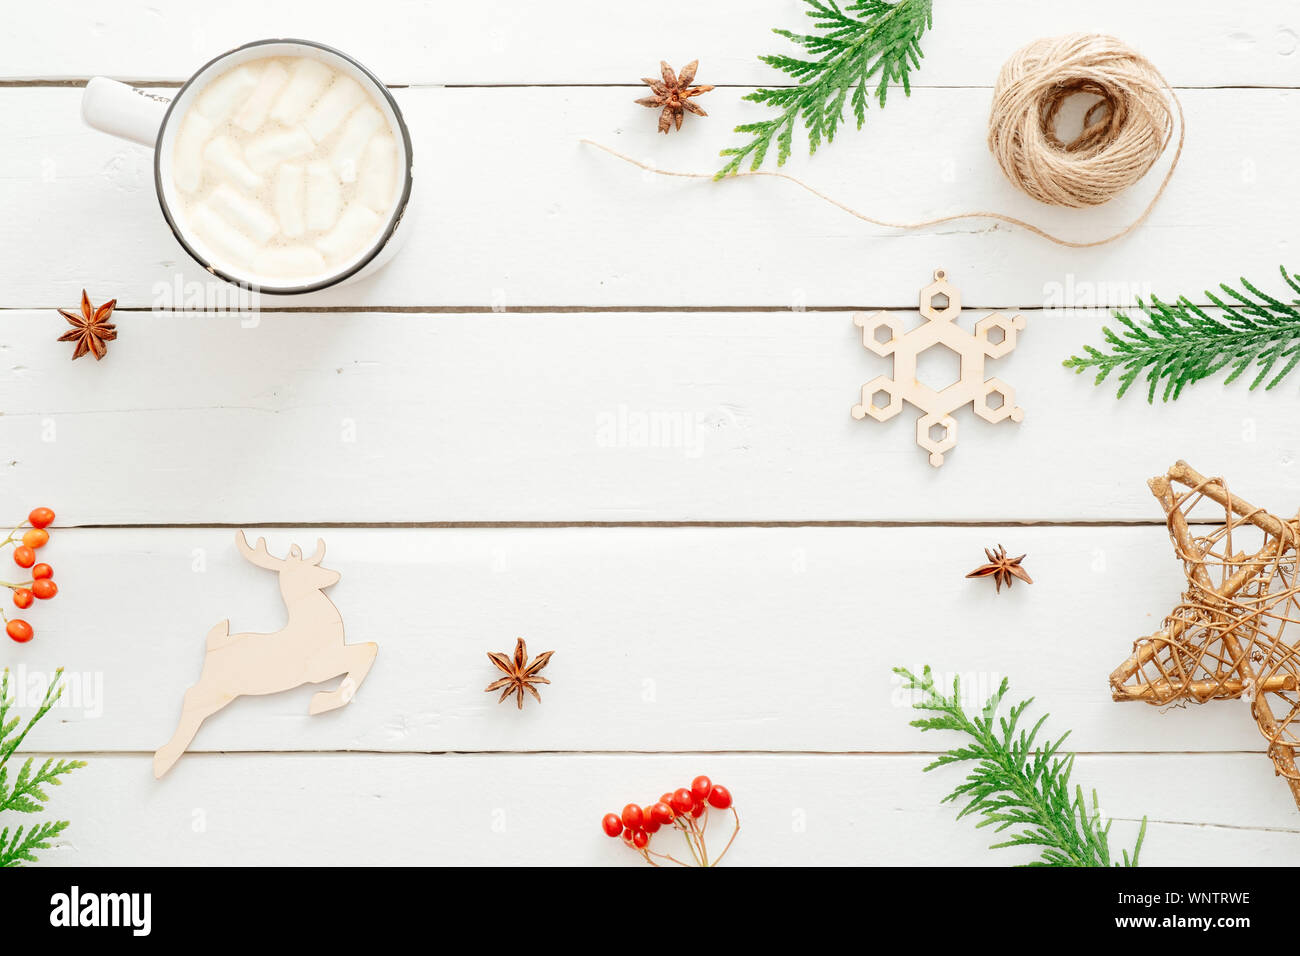 Composizione di natale. Cioccolata calda con marshmallows cup, Abete rami di alberi di natale decorazione in legno rustico sfondo bianco. Minima la piana Foto Stock